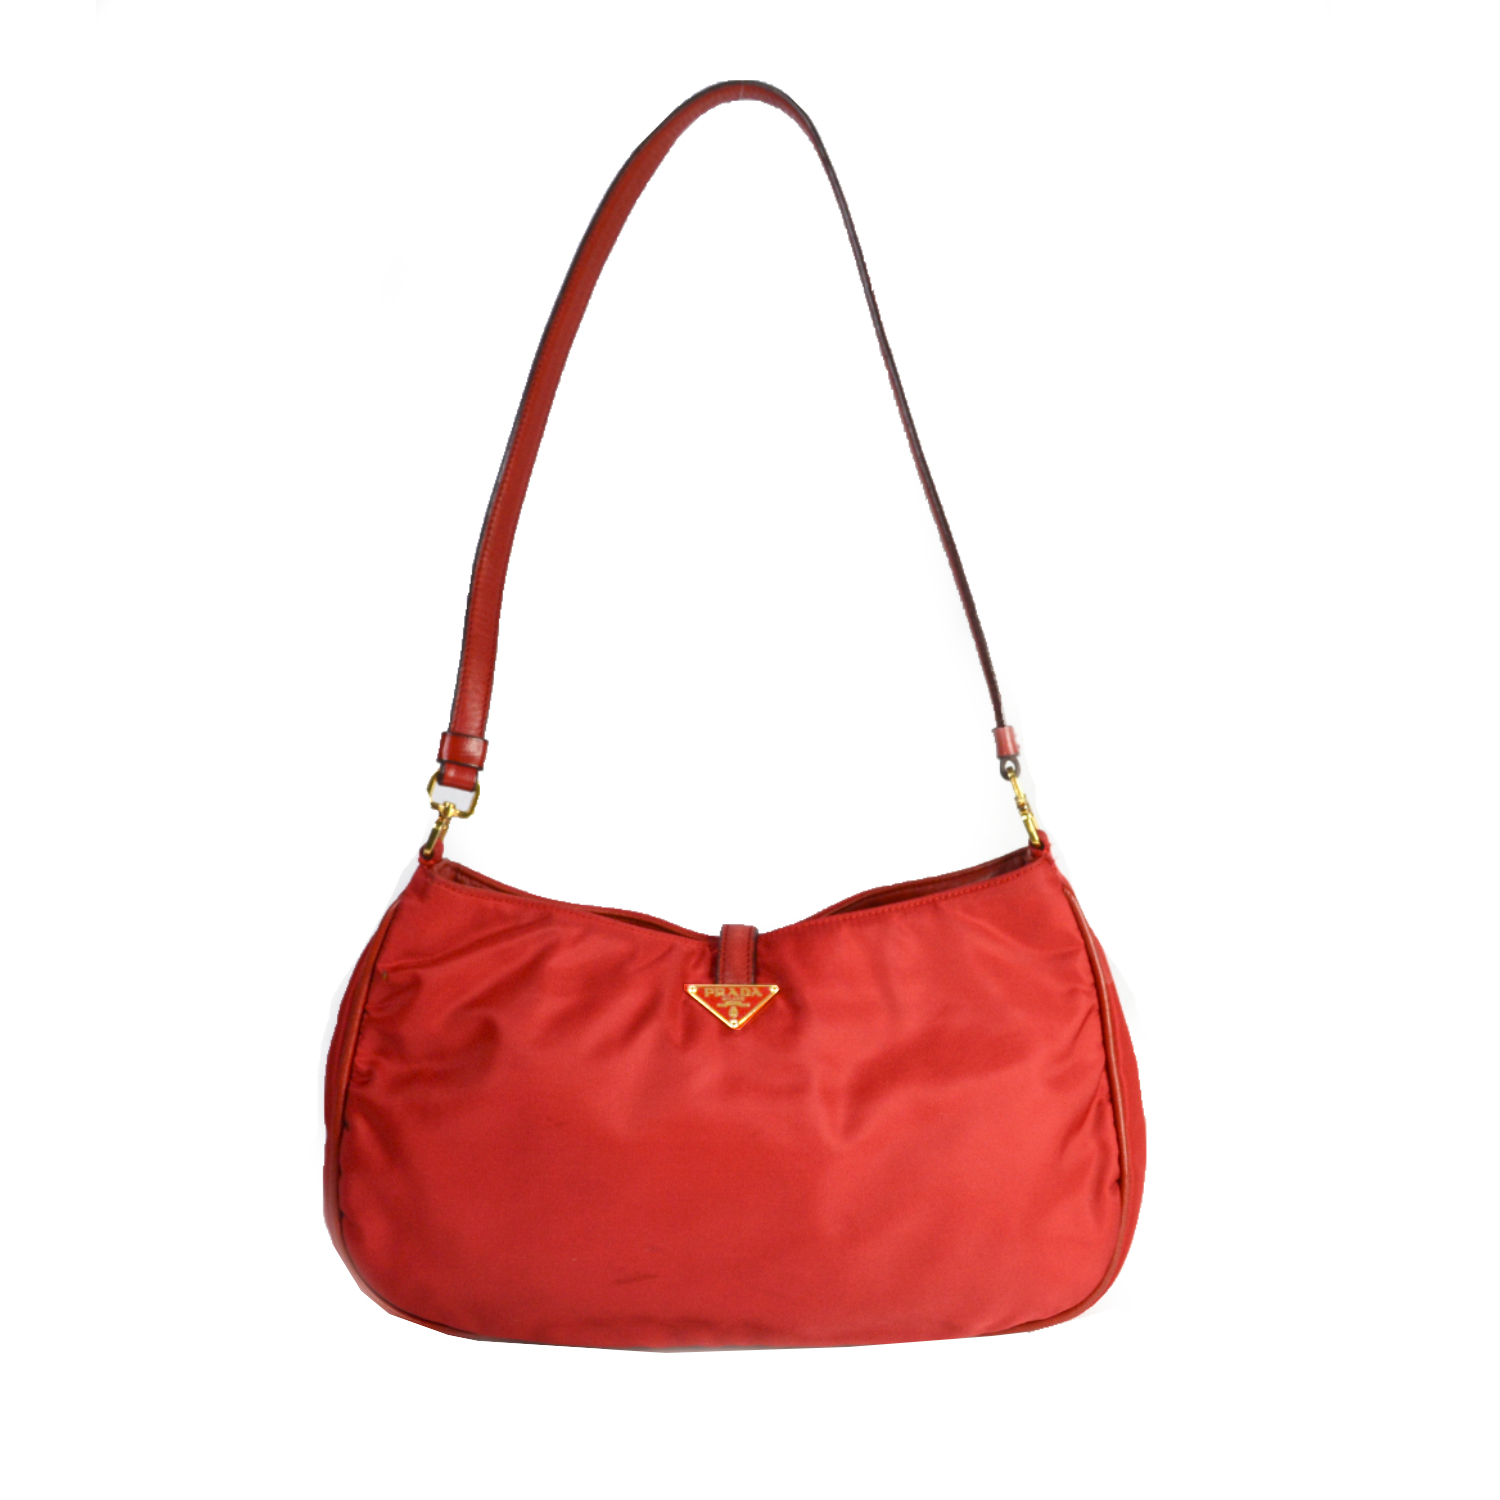 Vintage Prada Nylon Shoulder Bag in Cherry Red | NITRYL